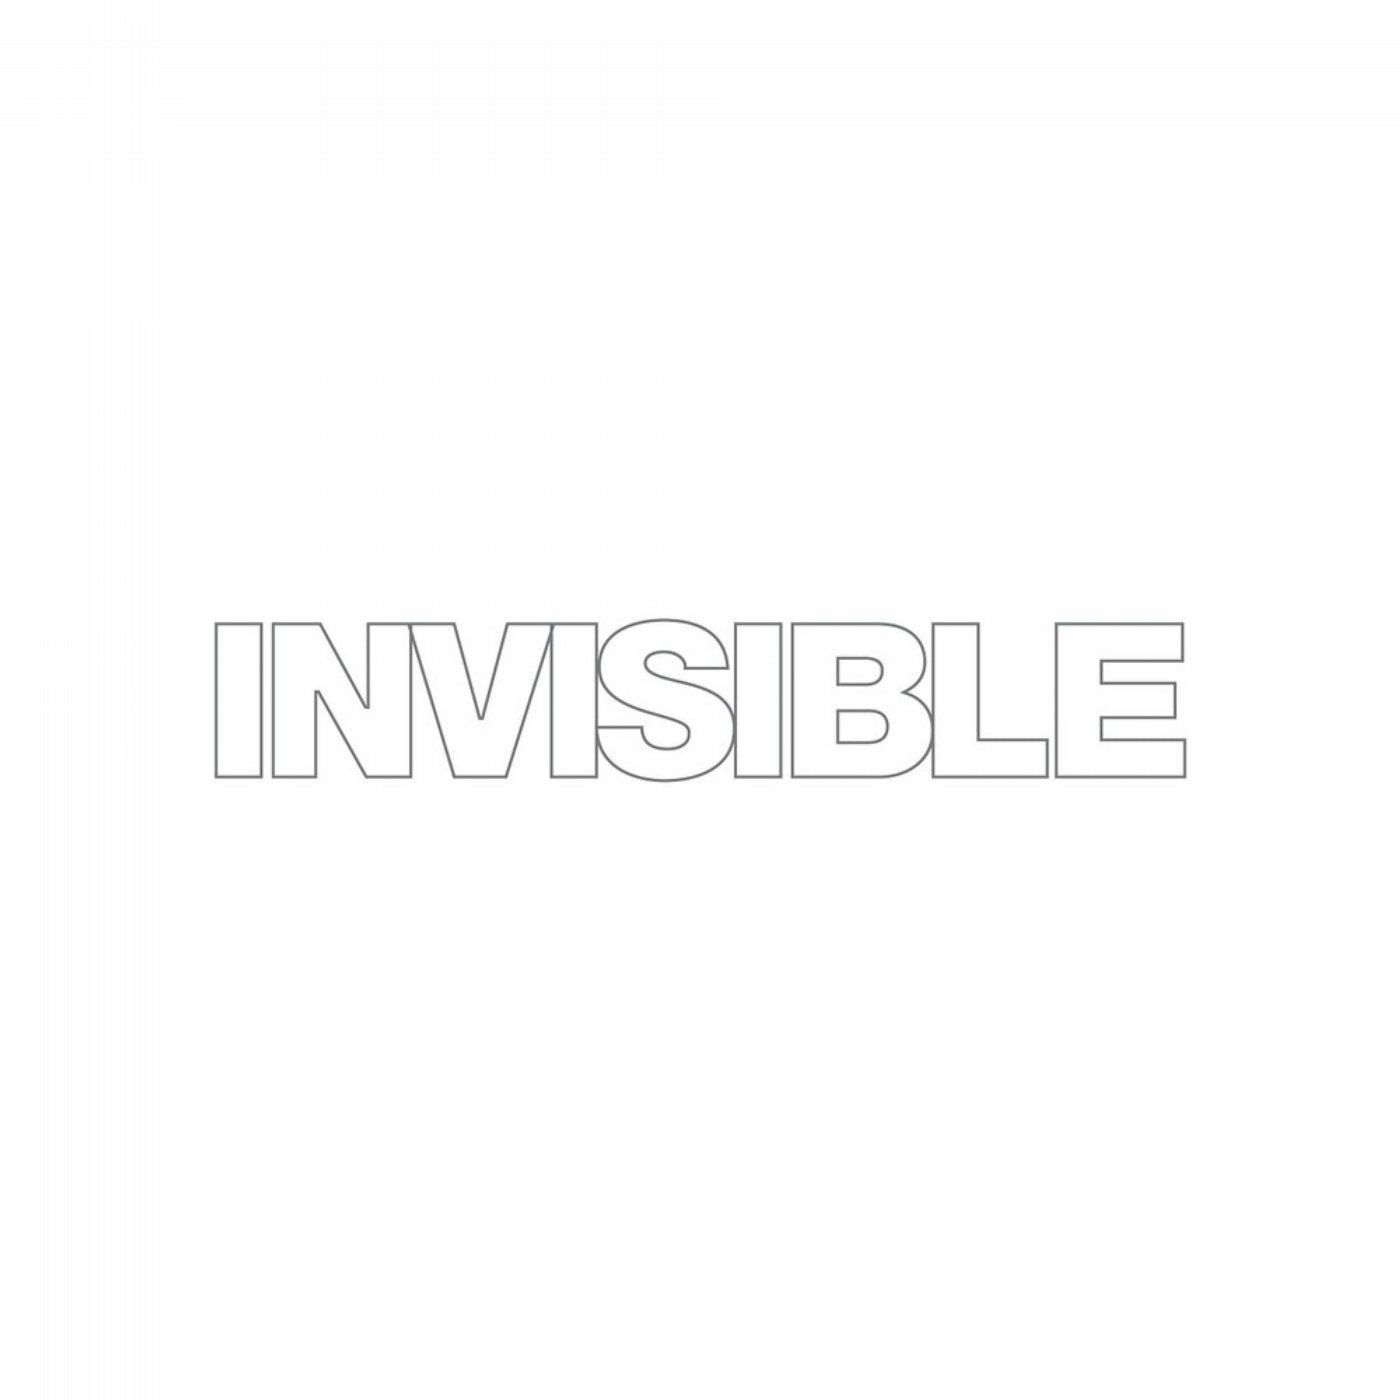 Invisible 020